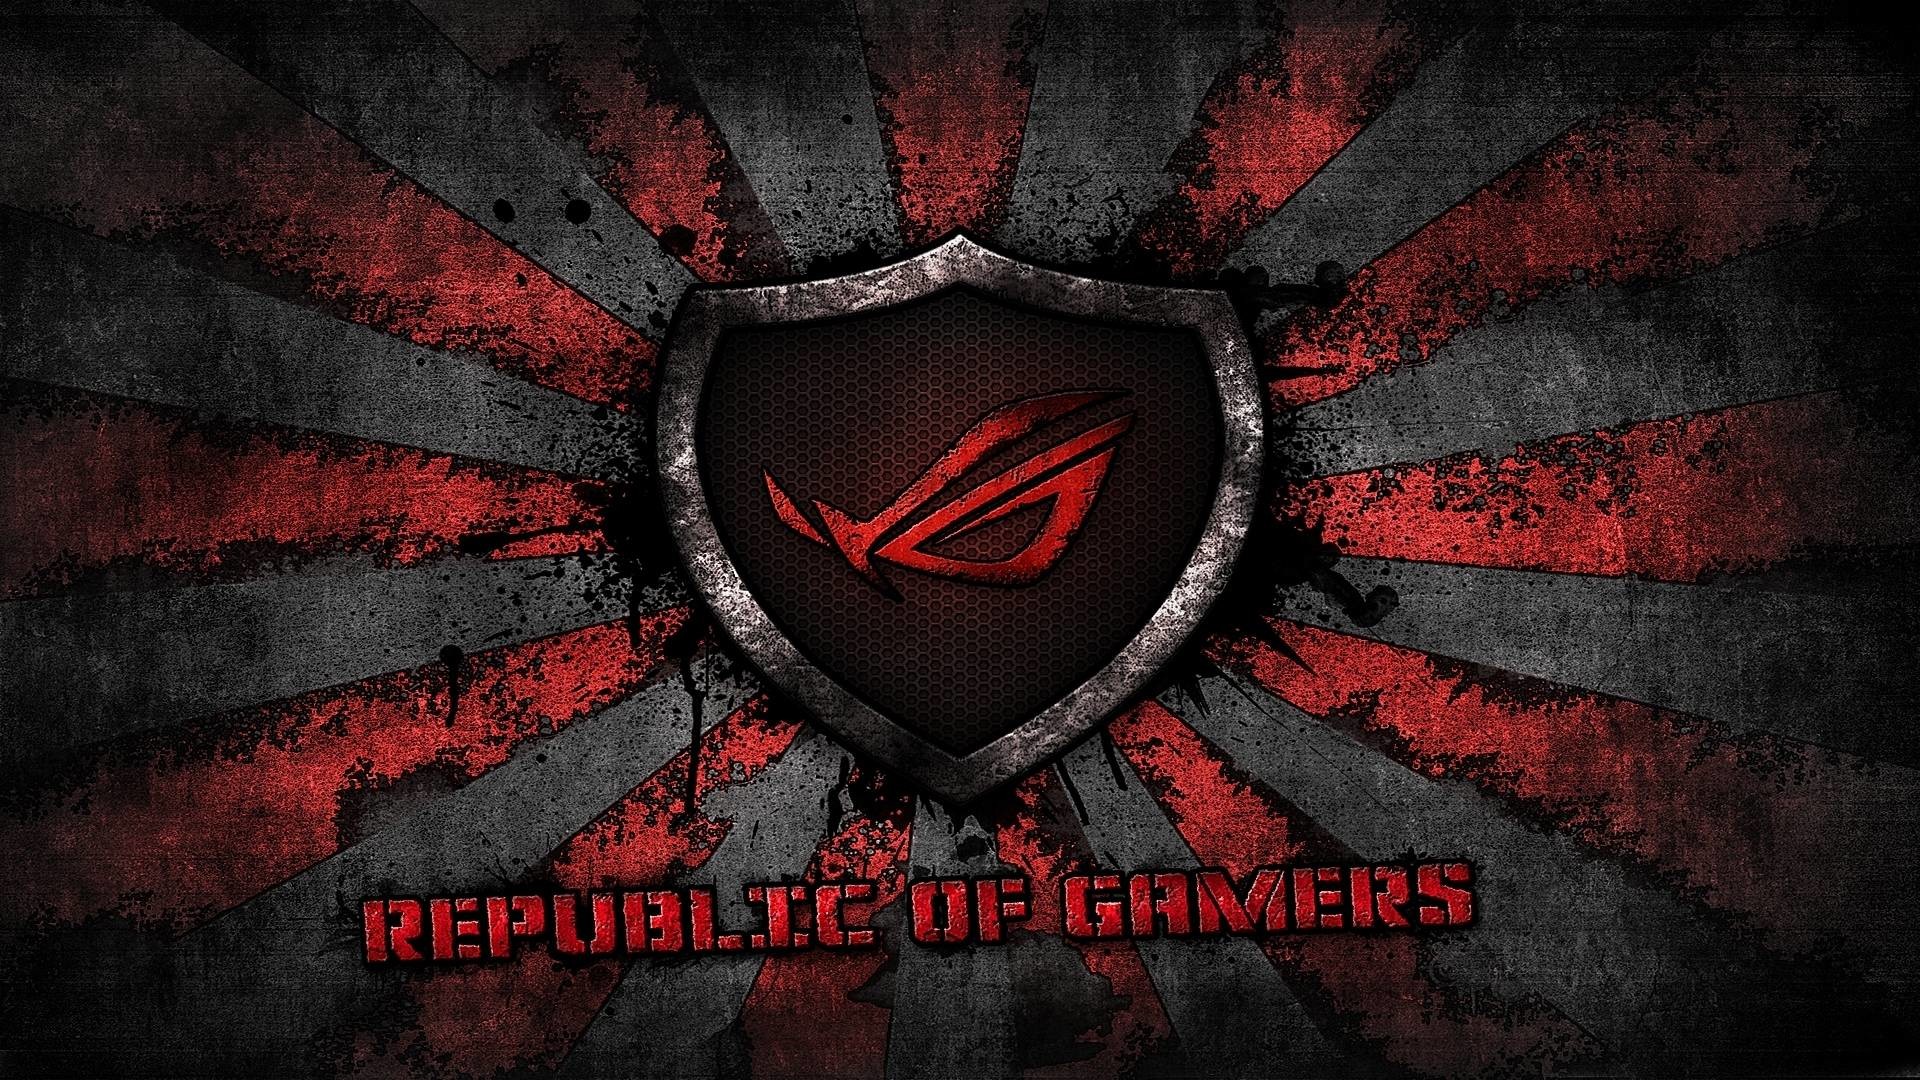 Asus Rog Merupakan Produk Yang Dikeluarkan Oleh Asus - Republic Of Gamers  Logo PNG Image With Transparent Background | TOPpng